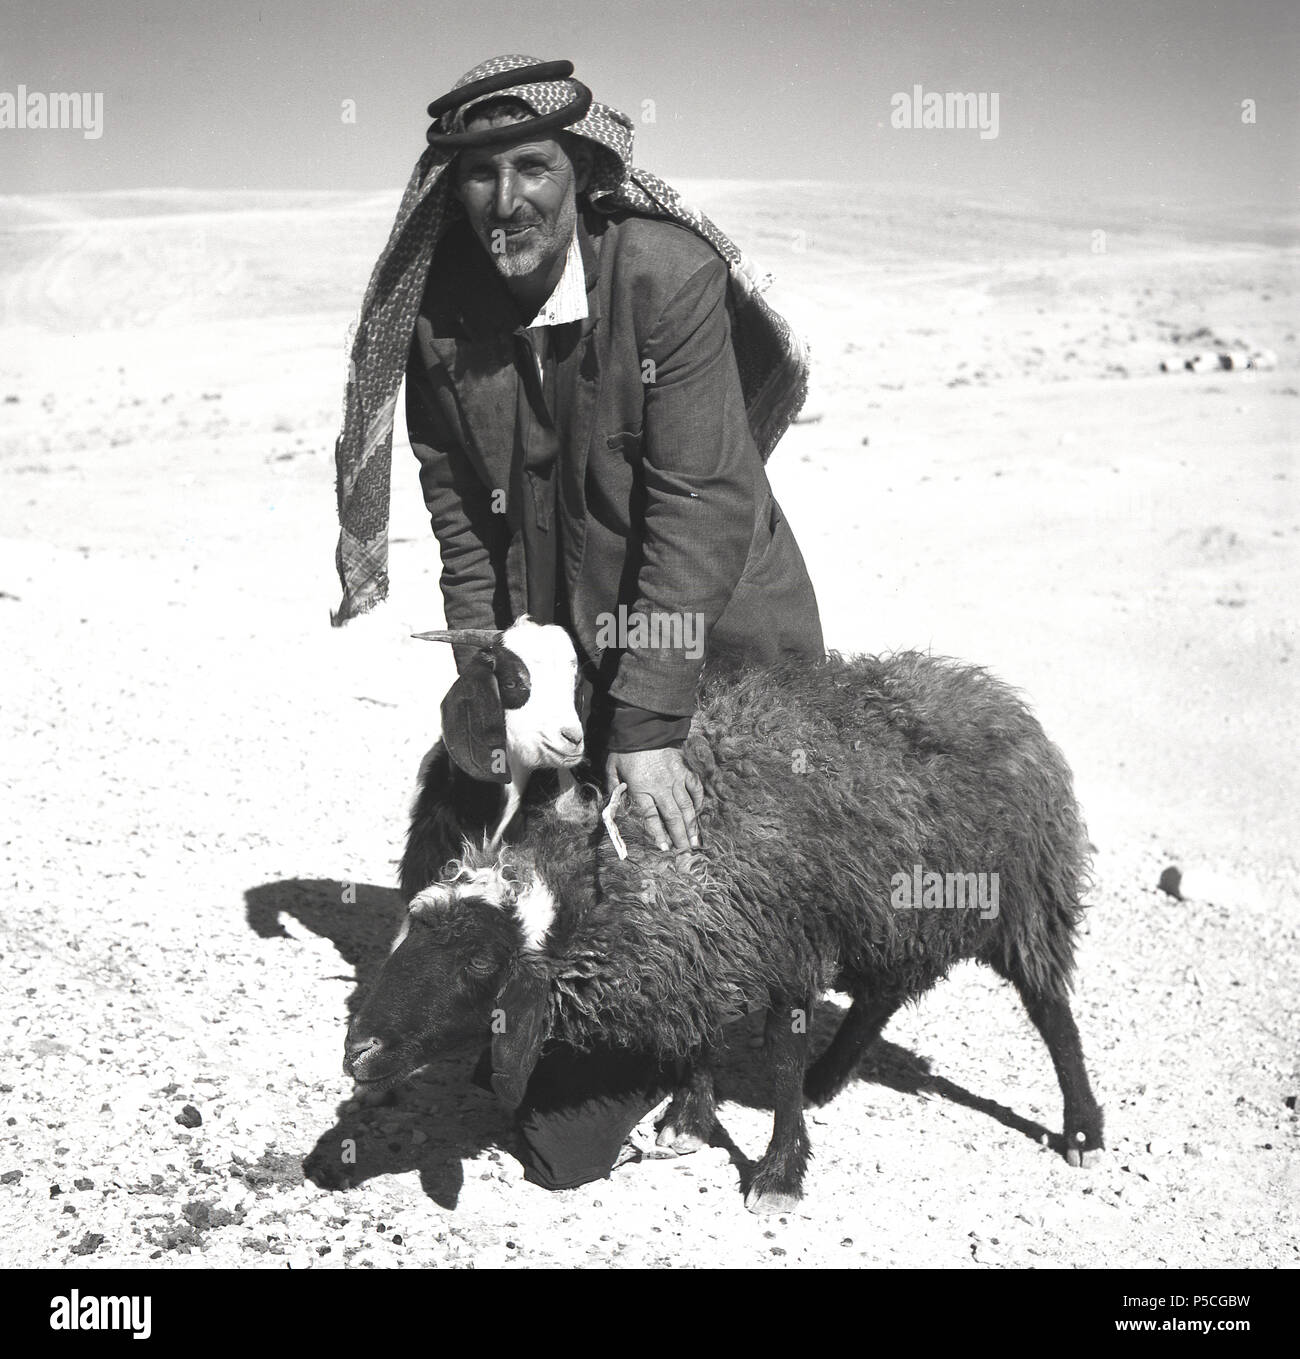 Années 1950, un homme dans le bédouin du désert aride avec deux de ses brebis, en Jordanie. Habitants du désert, le bedoiuns sont les premiers peuples de la Jordanie, vivant une vie nomade qui a donné les meilleurs conditions de pâturage pour leur bétail. Sa tête est couverte par la coiffure traditionnelle, le Shemagh. Banque D'Images